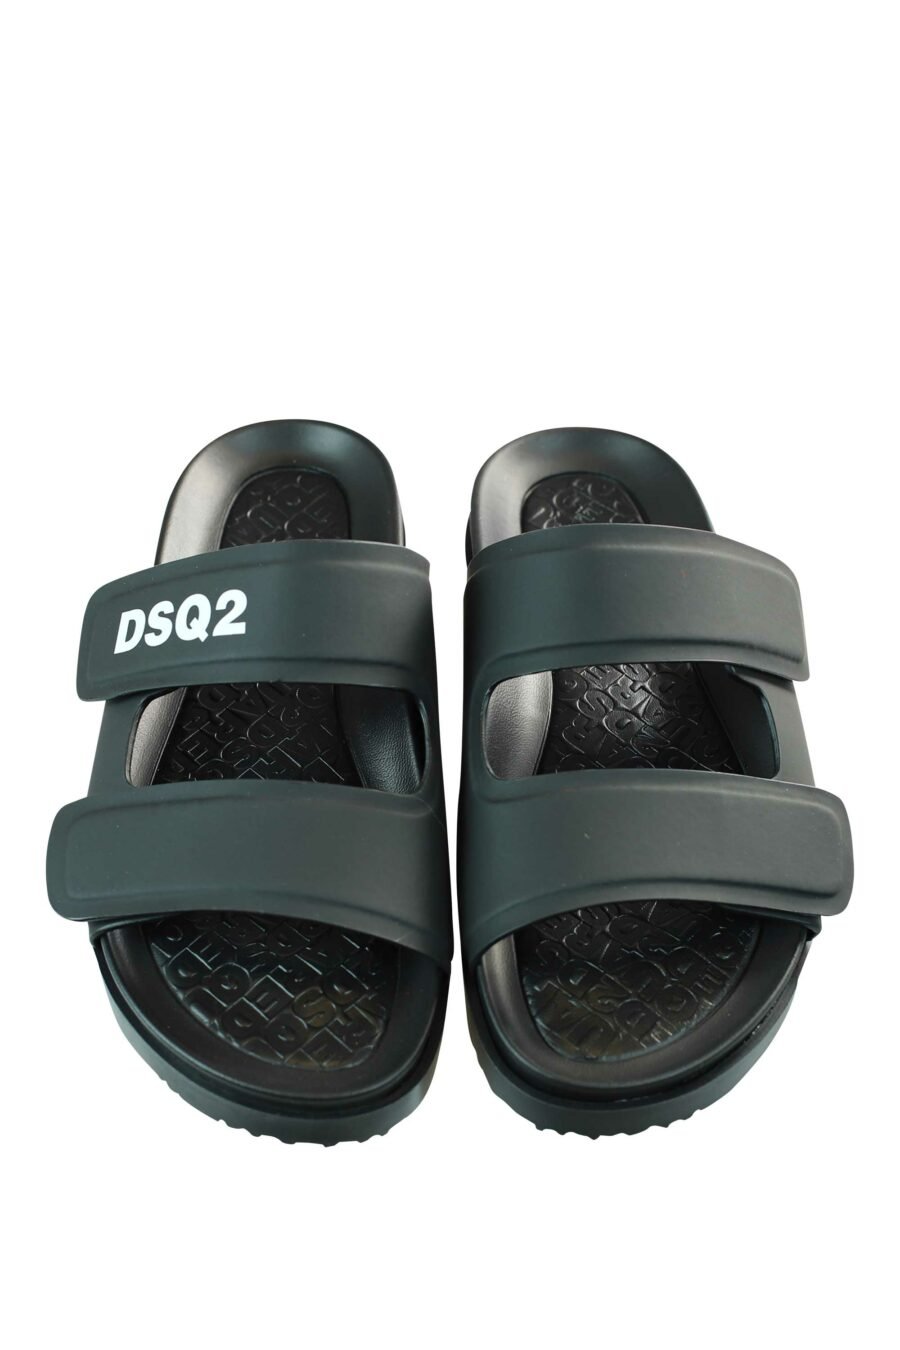 Sandálias pretas com logótipo "dsq2" branco e velcro - 8055777203200 4